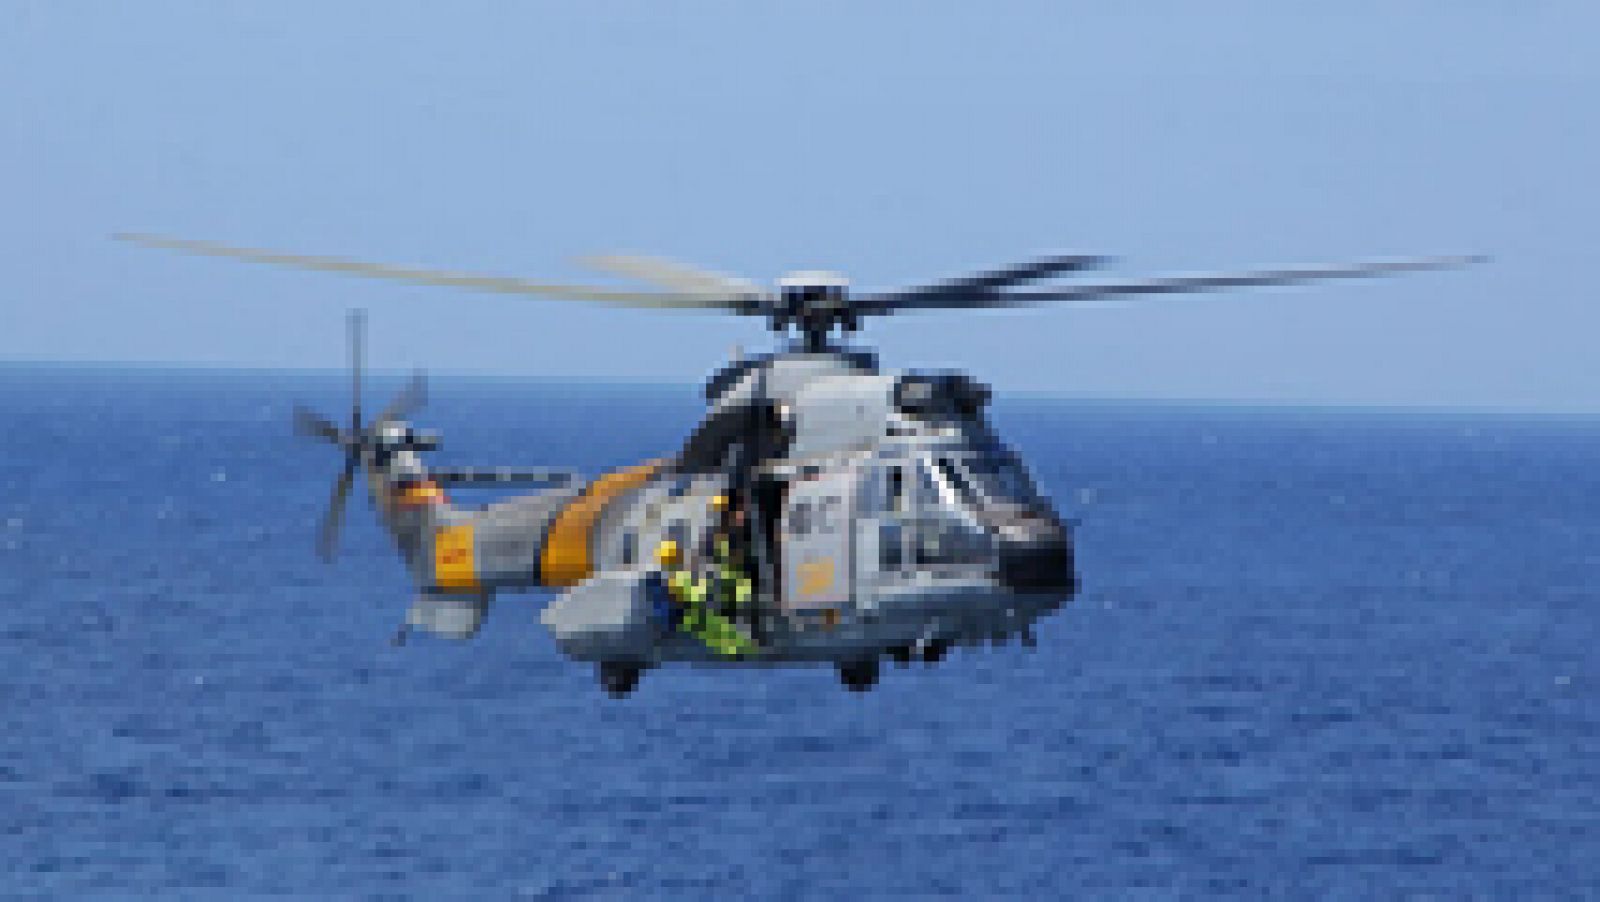 Defensa estudia cómo recuperar a los tripulantes del helicóptero accidentado en Canarias